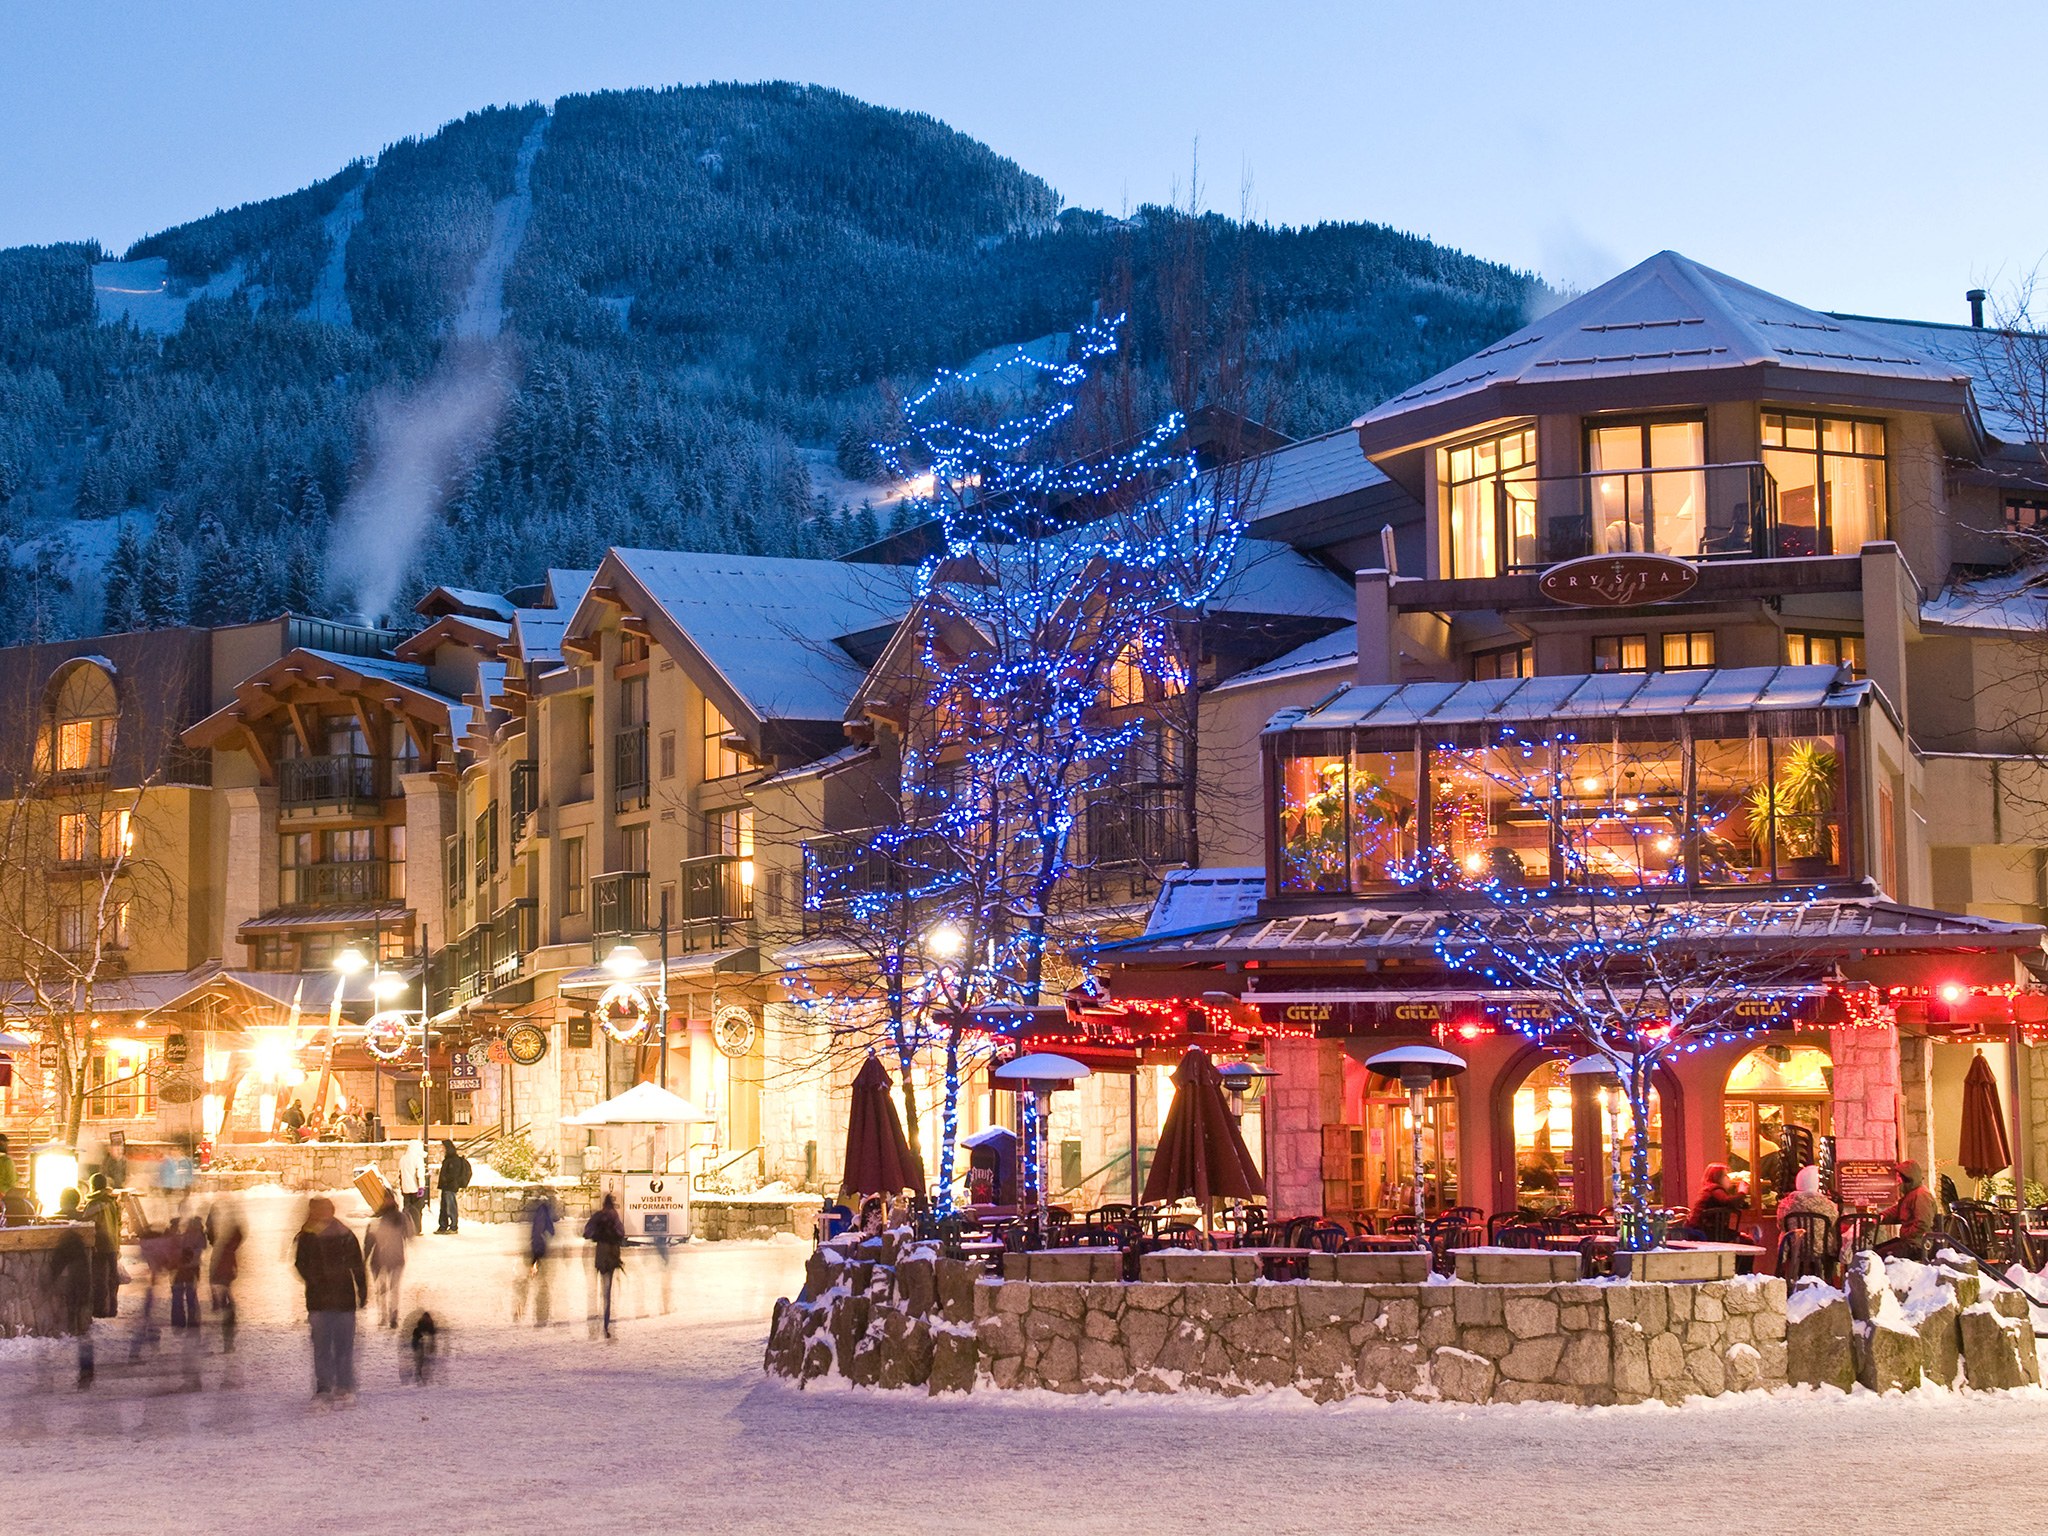 Winter Park Ski Resort in Colorado